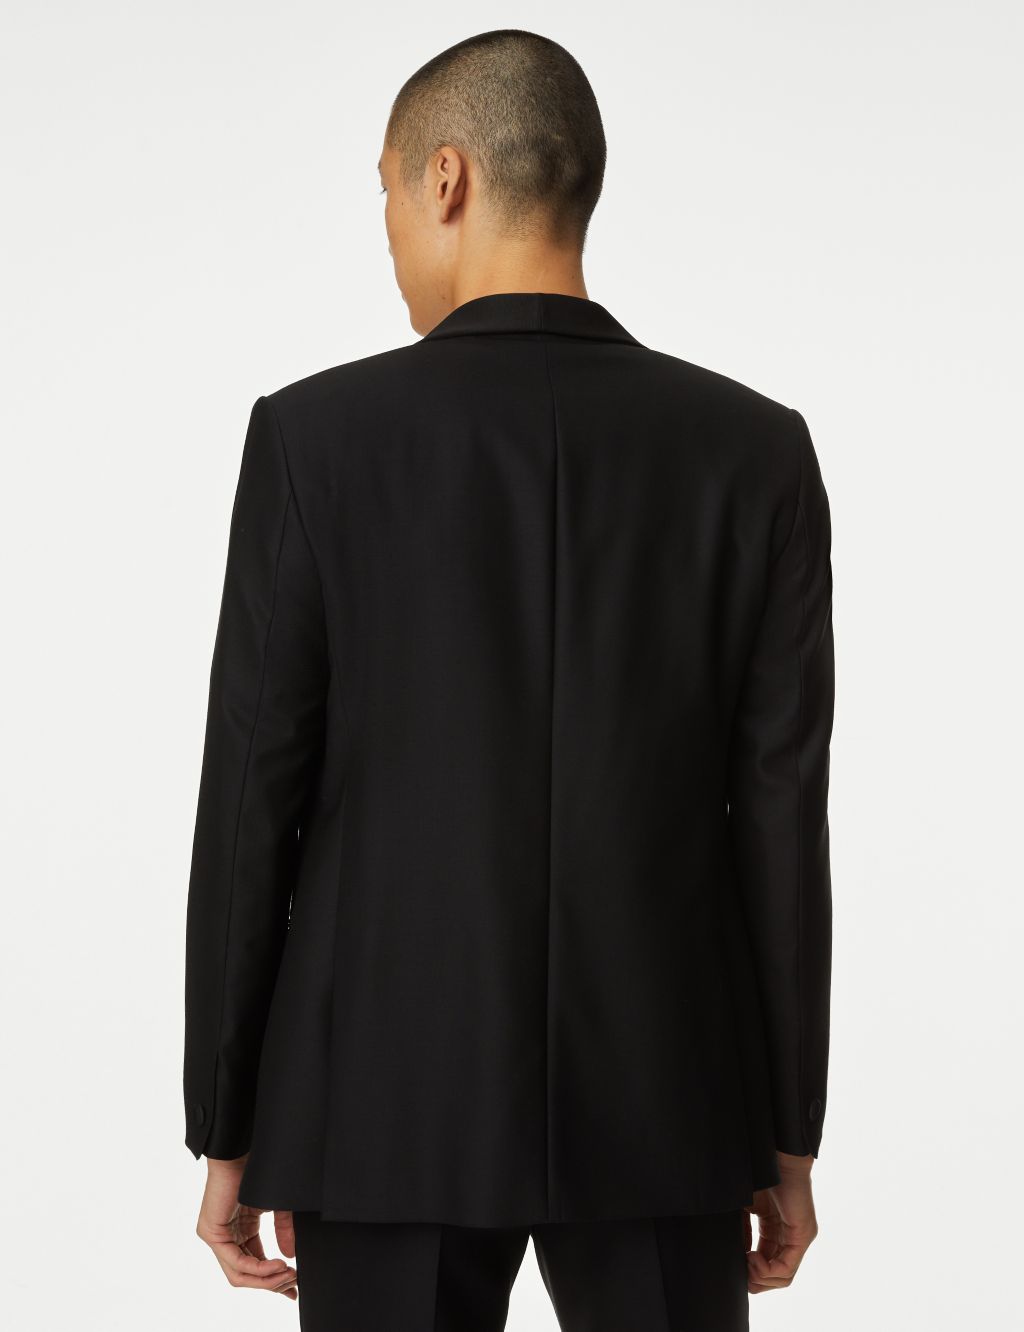 Regular Fit British Pure Wool Tuxedo Suit image 3